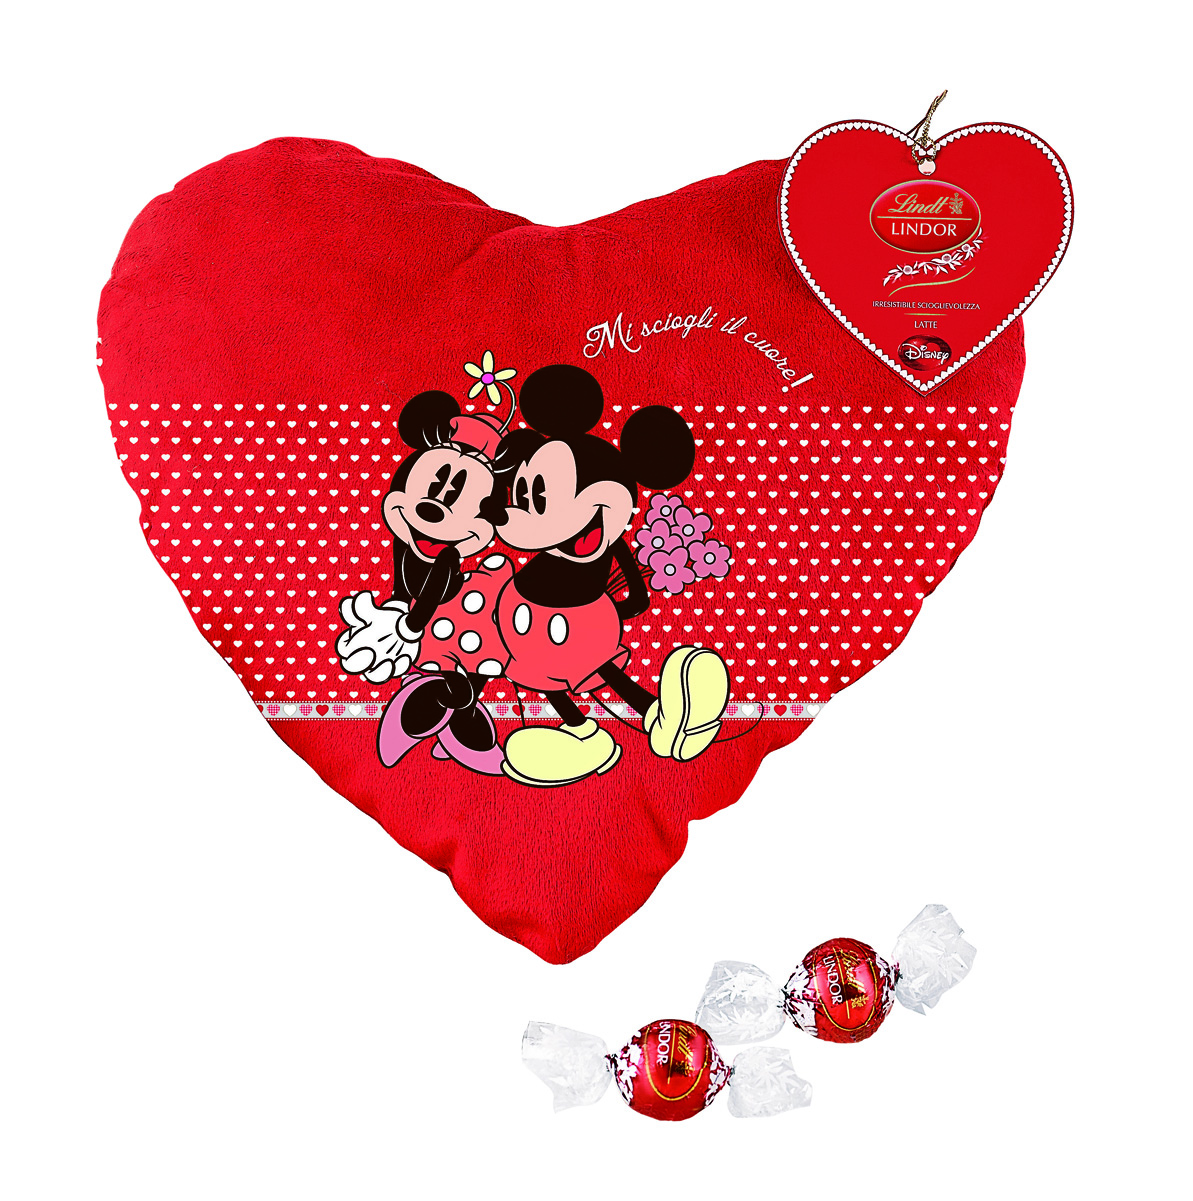 Le idee regalo Disney per San Valentino 2014